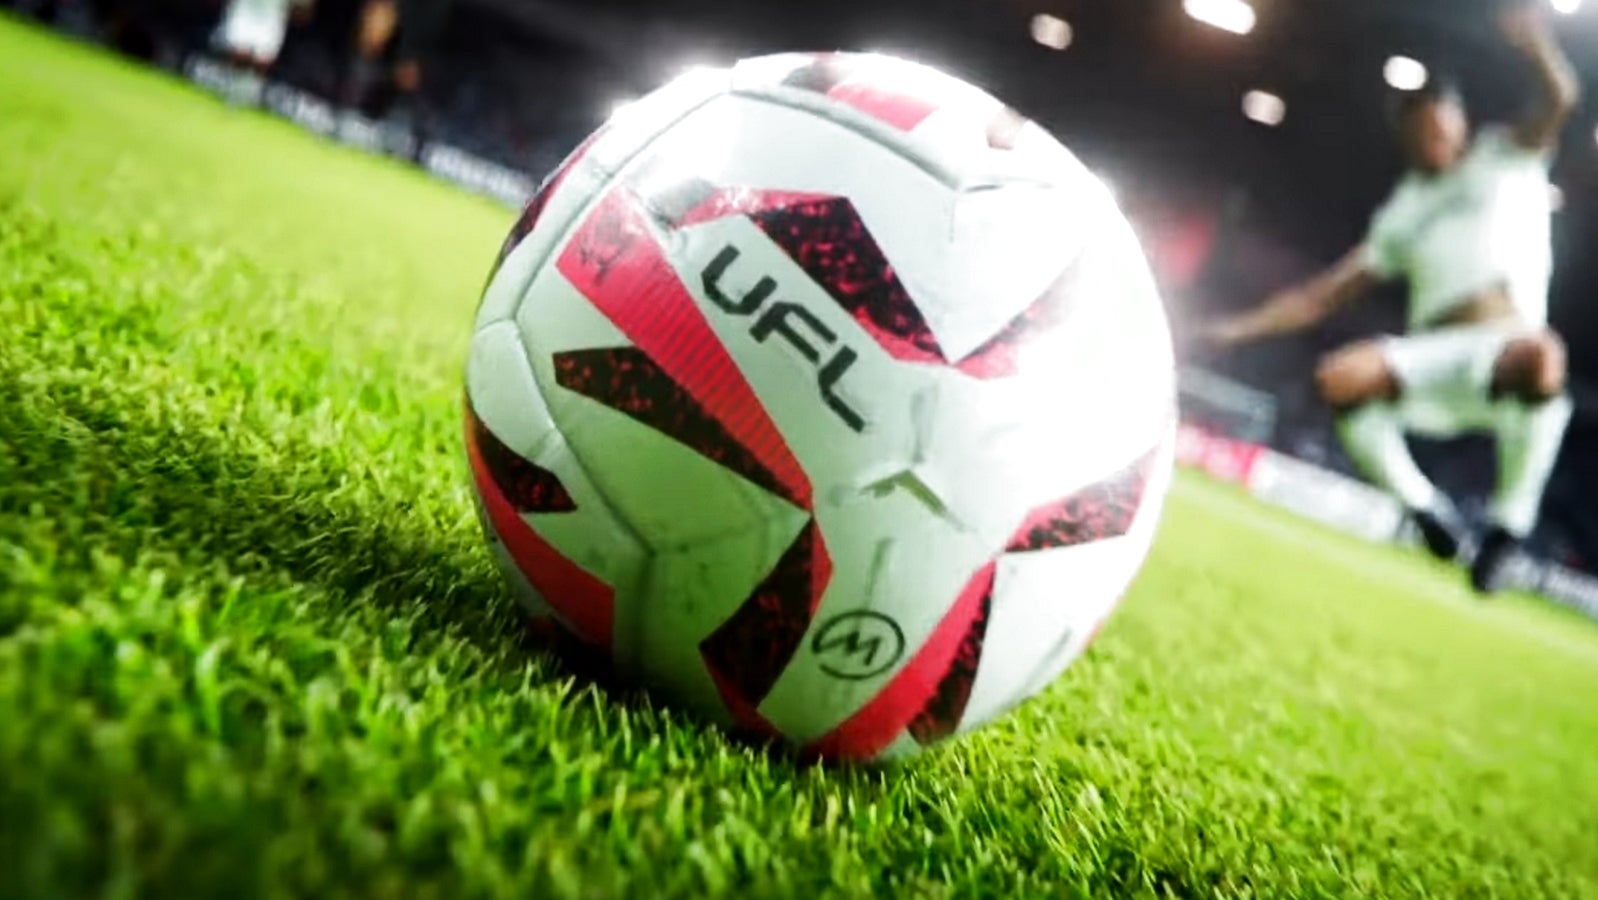 Bilder zu UFL möchte FIFA und eFootball Konkurrenz machen